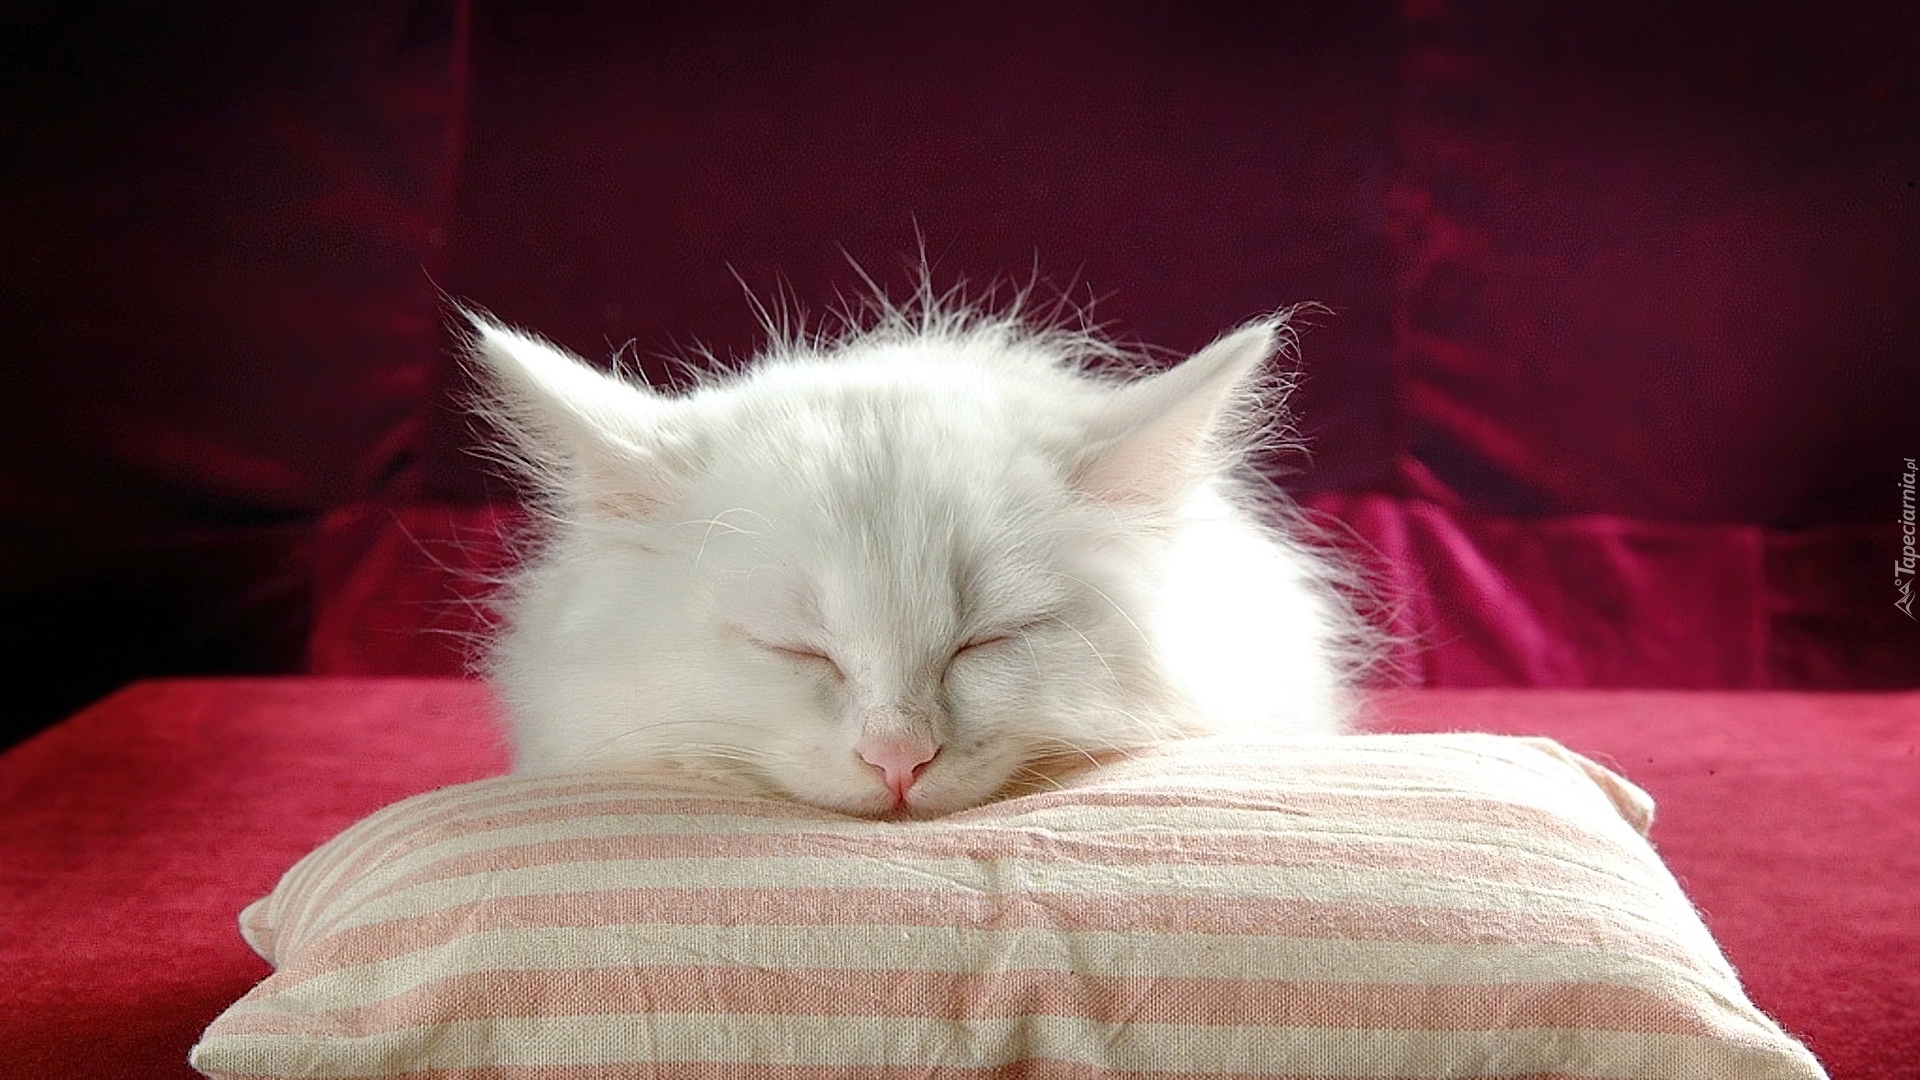 Спи спокойно словно. Спящие котята. Спокойной ночи с кошками.